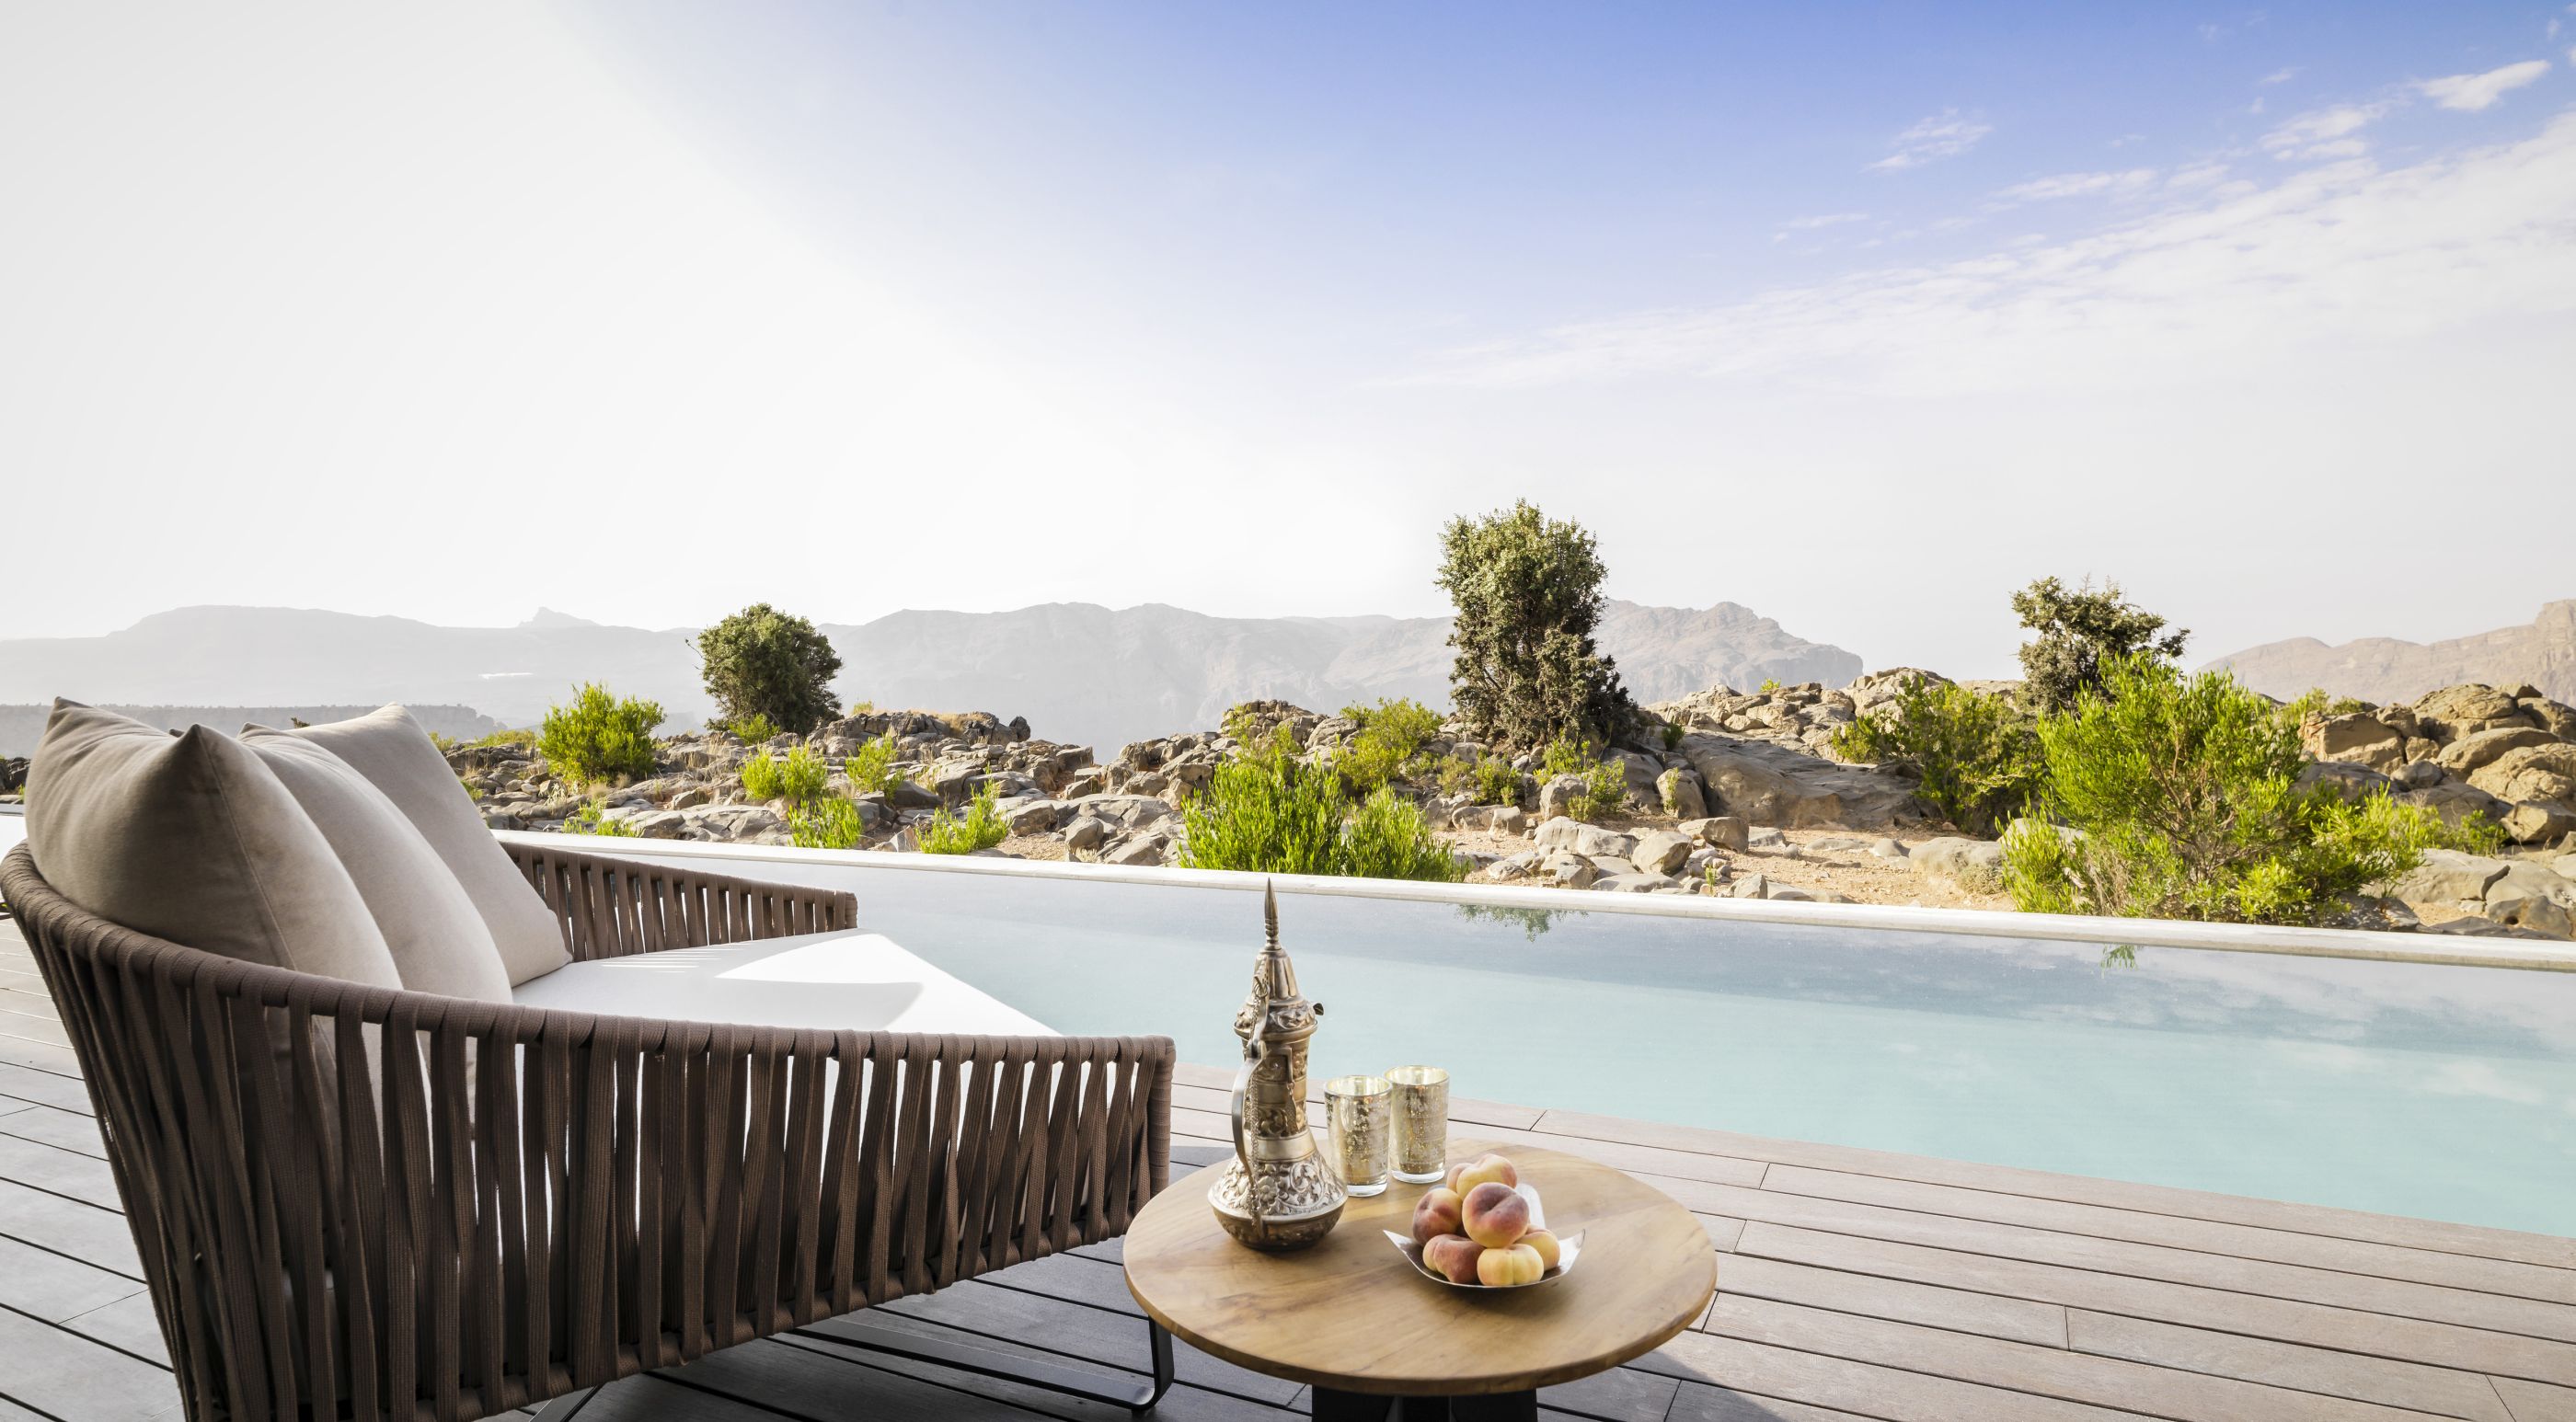 Swimming pool of villa pool in Anantara Al Jabal Al Akhdar Resort, Oman